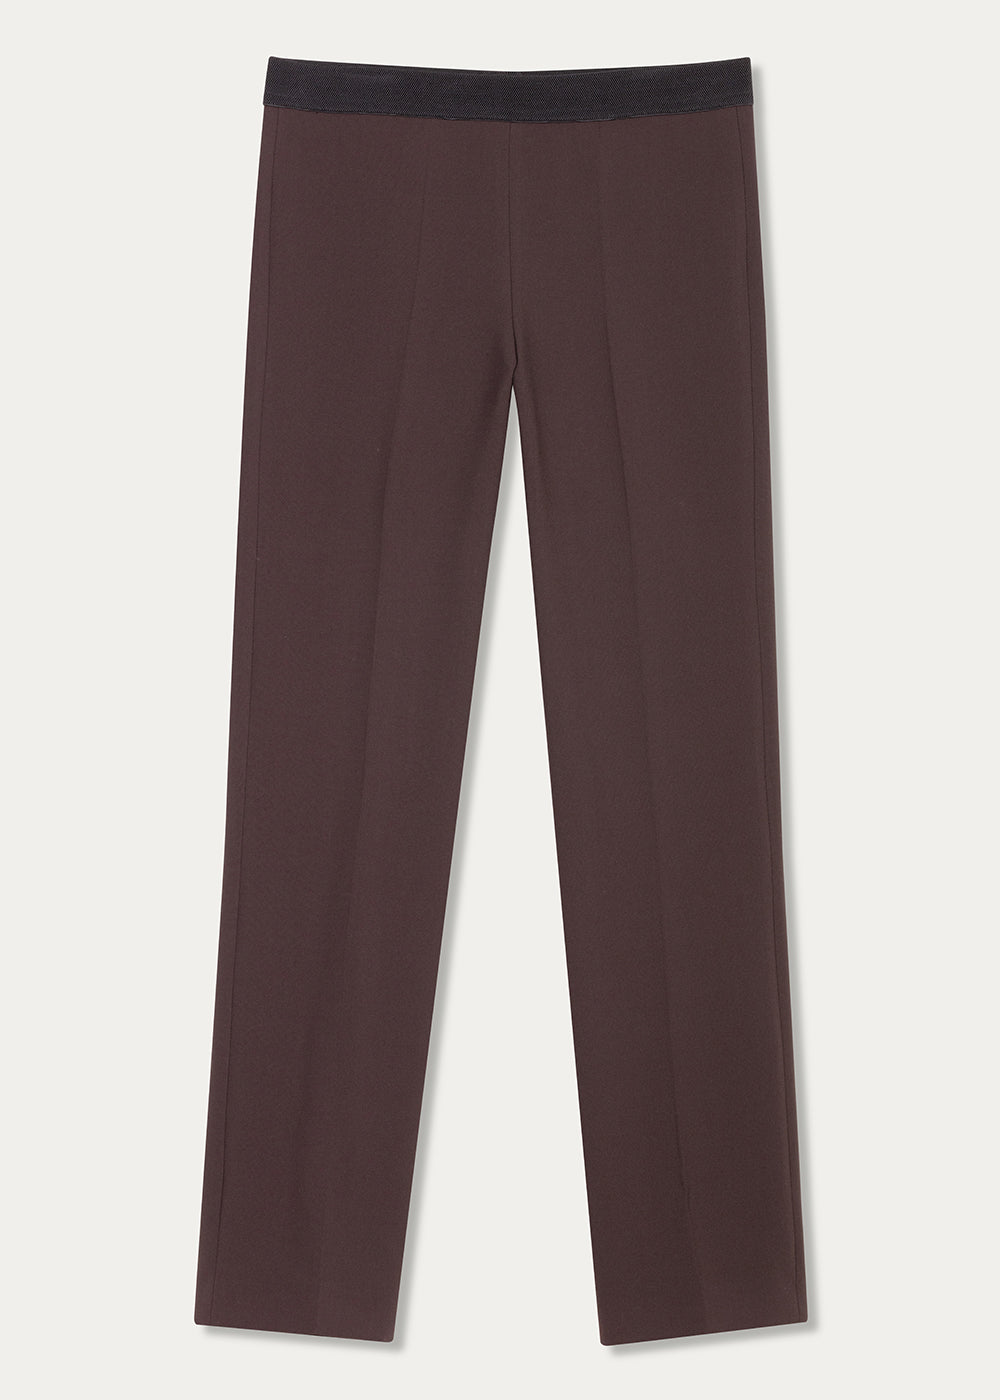 Pantalon avec taille élastique marron